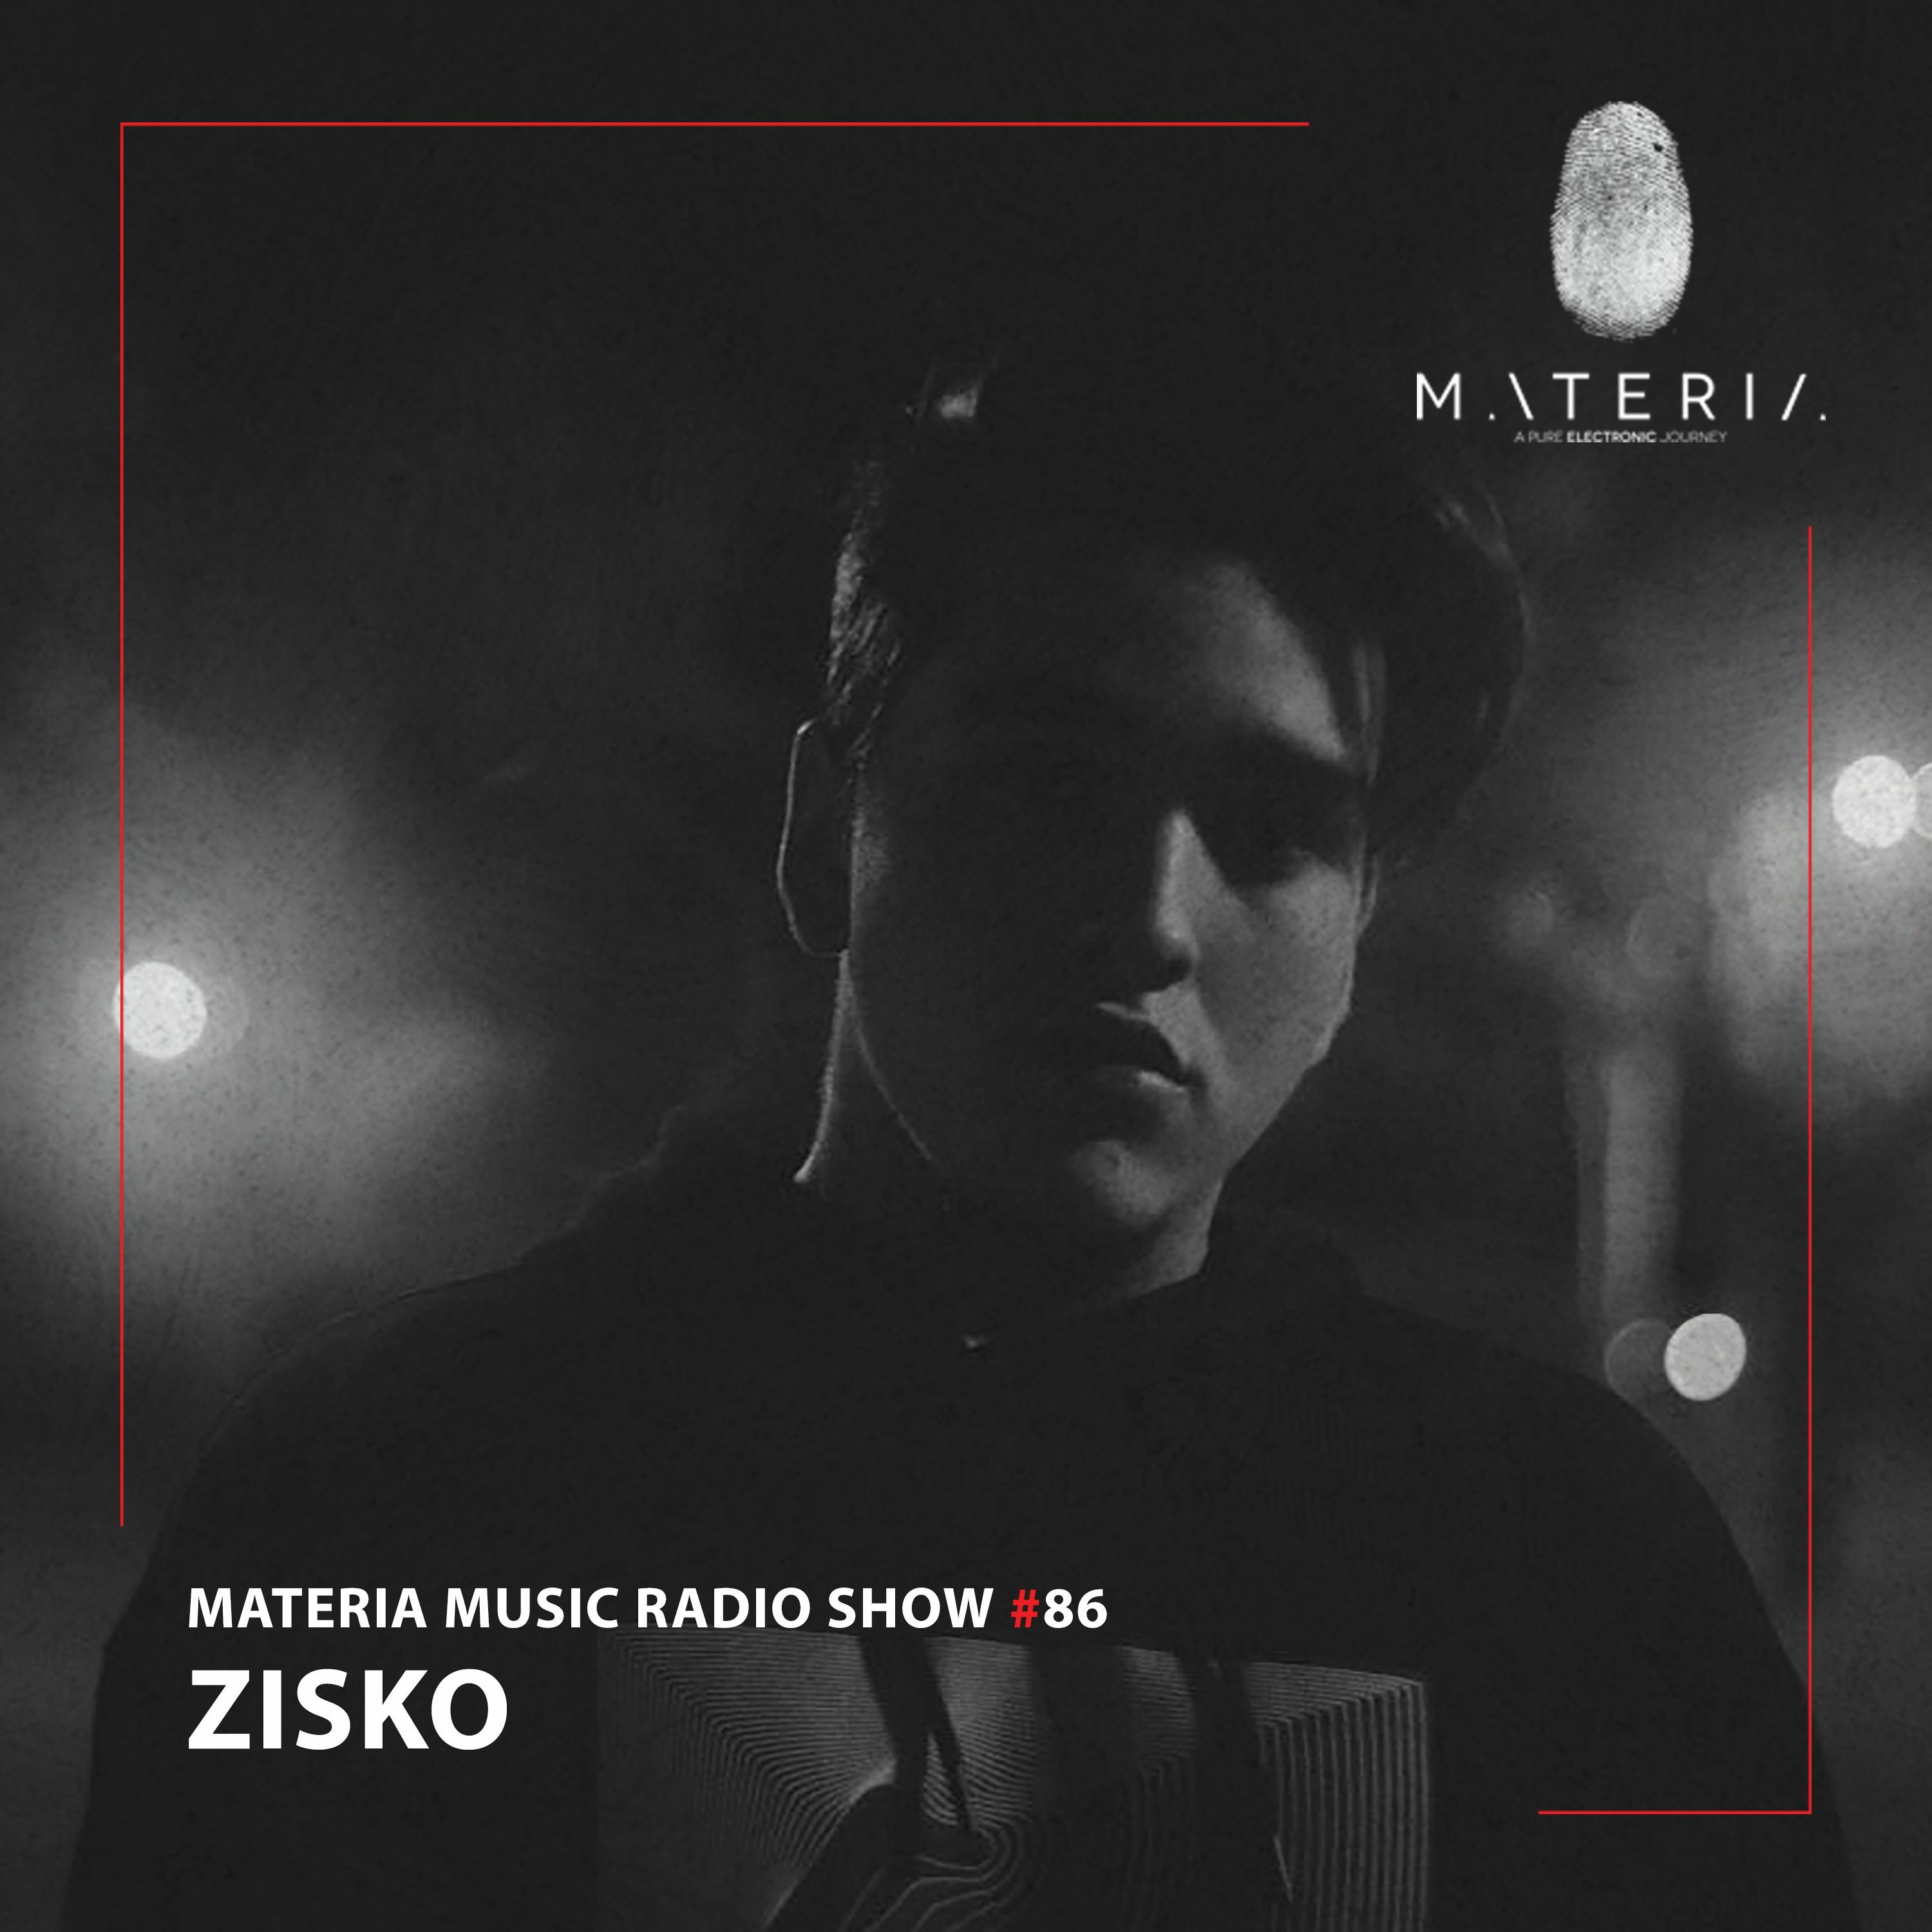 MATERIA Music Radio Show 086 with Zisko